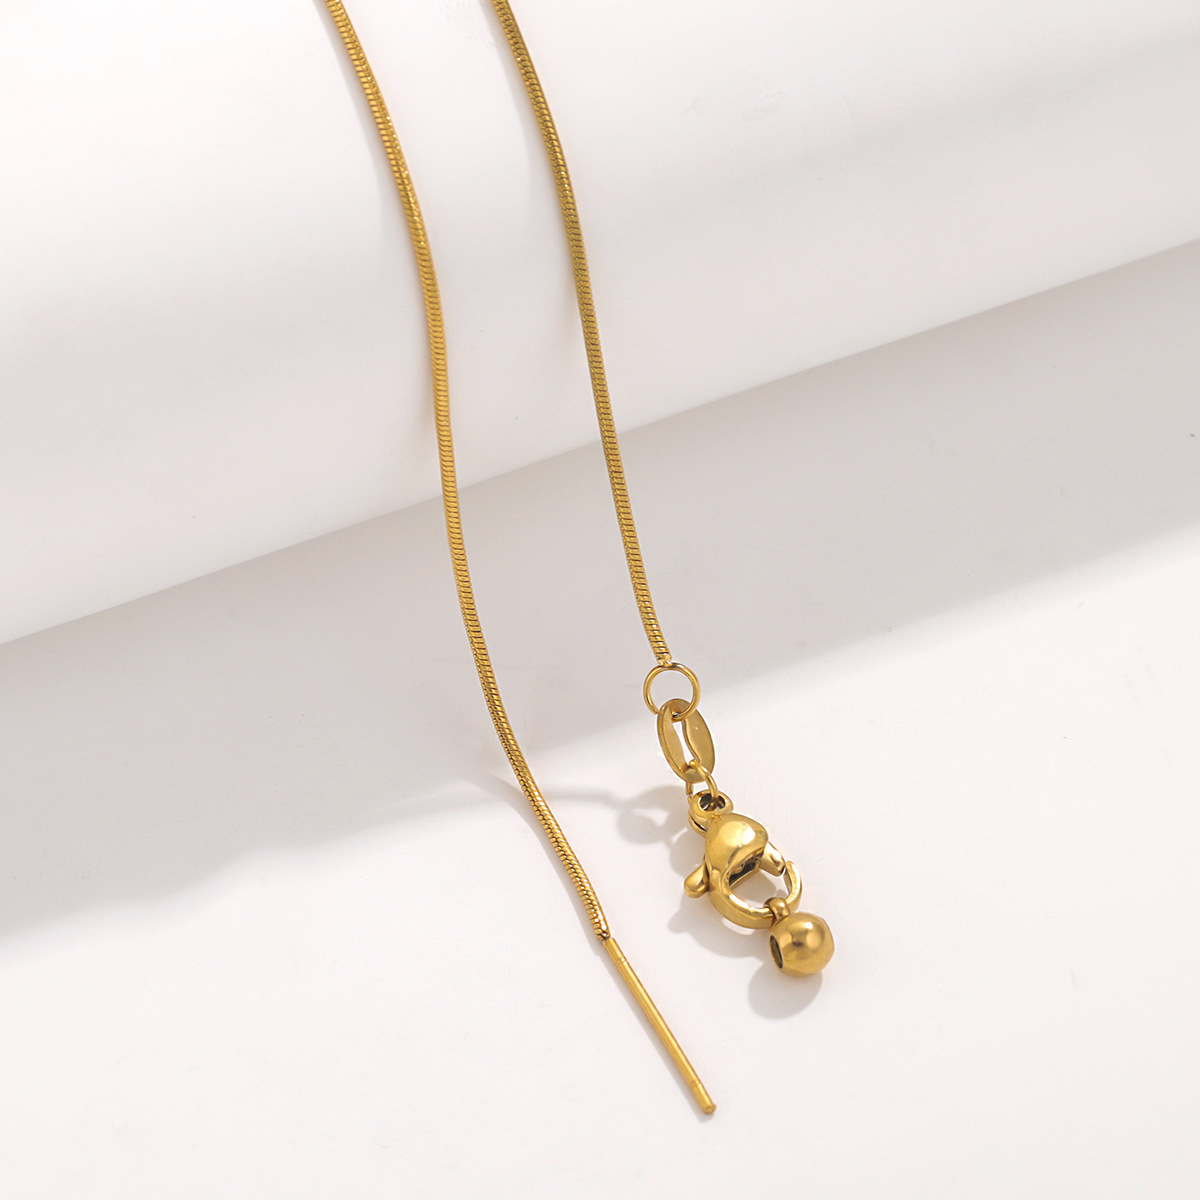 8:Gold - Round snake chain chain